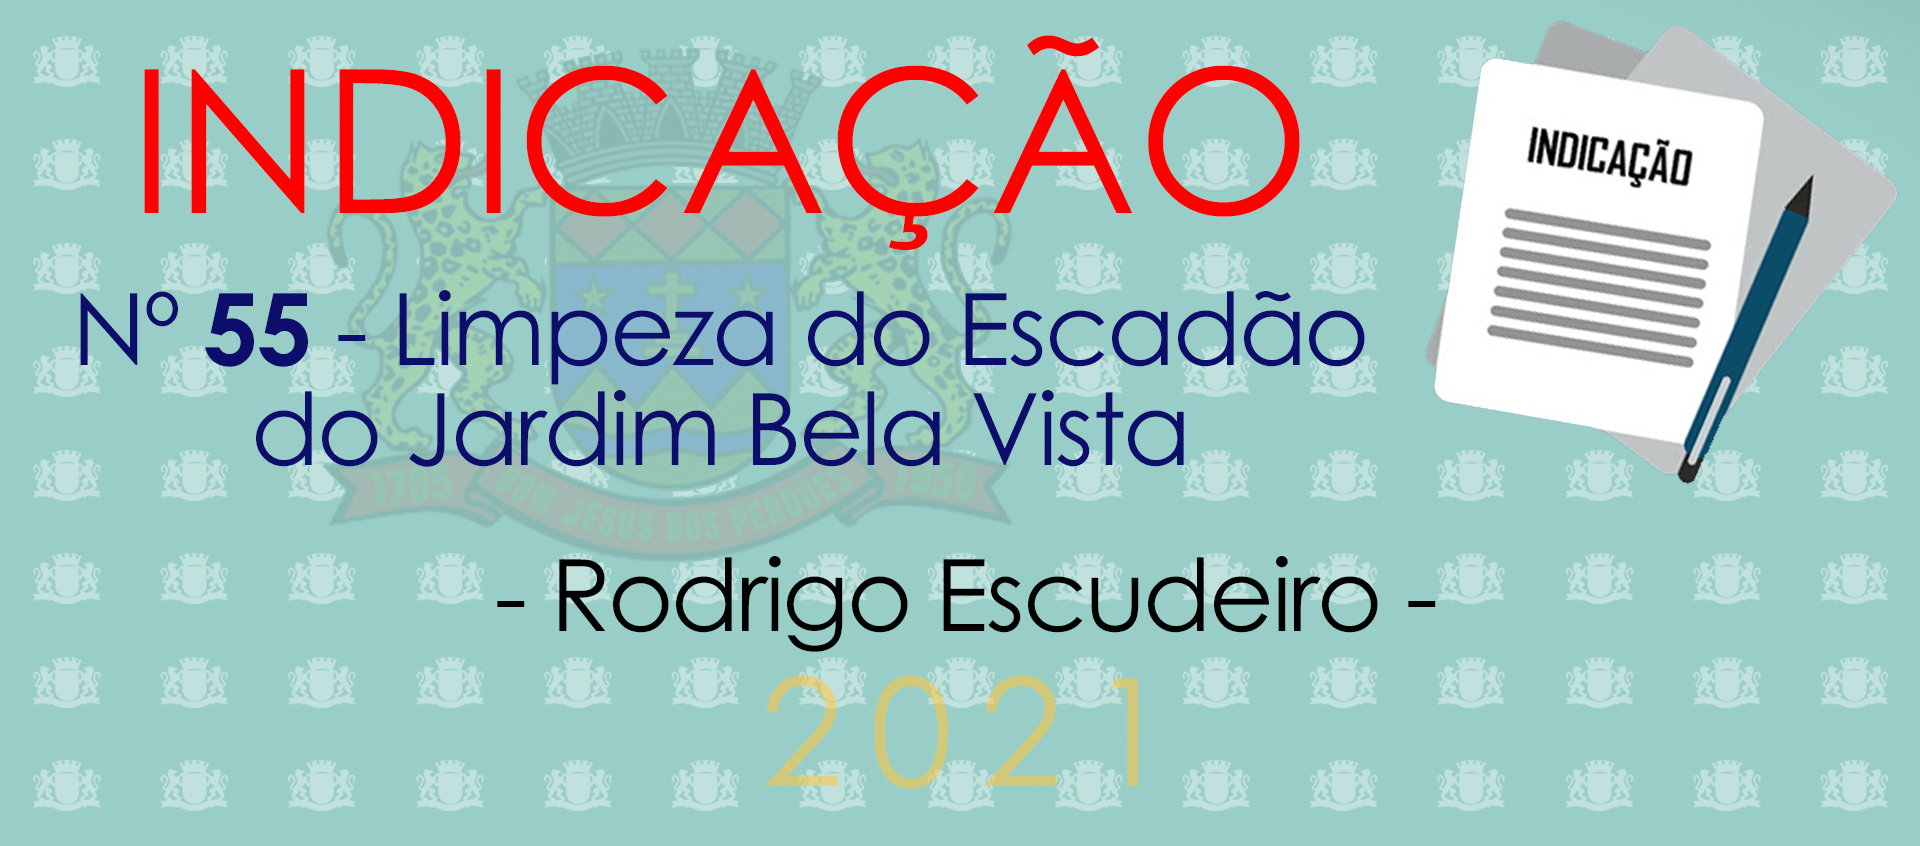 Indicação 55-2021 - Limpeza do Escadão do Jardim Bela Vista - Rodrigo Escudeiro